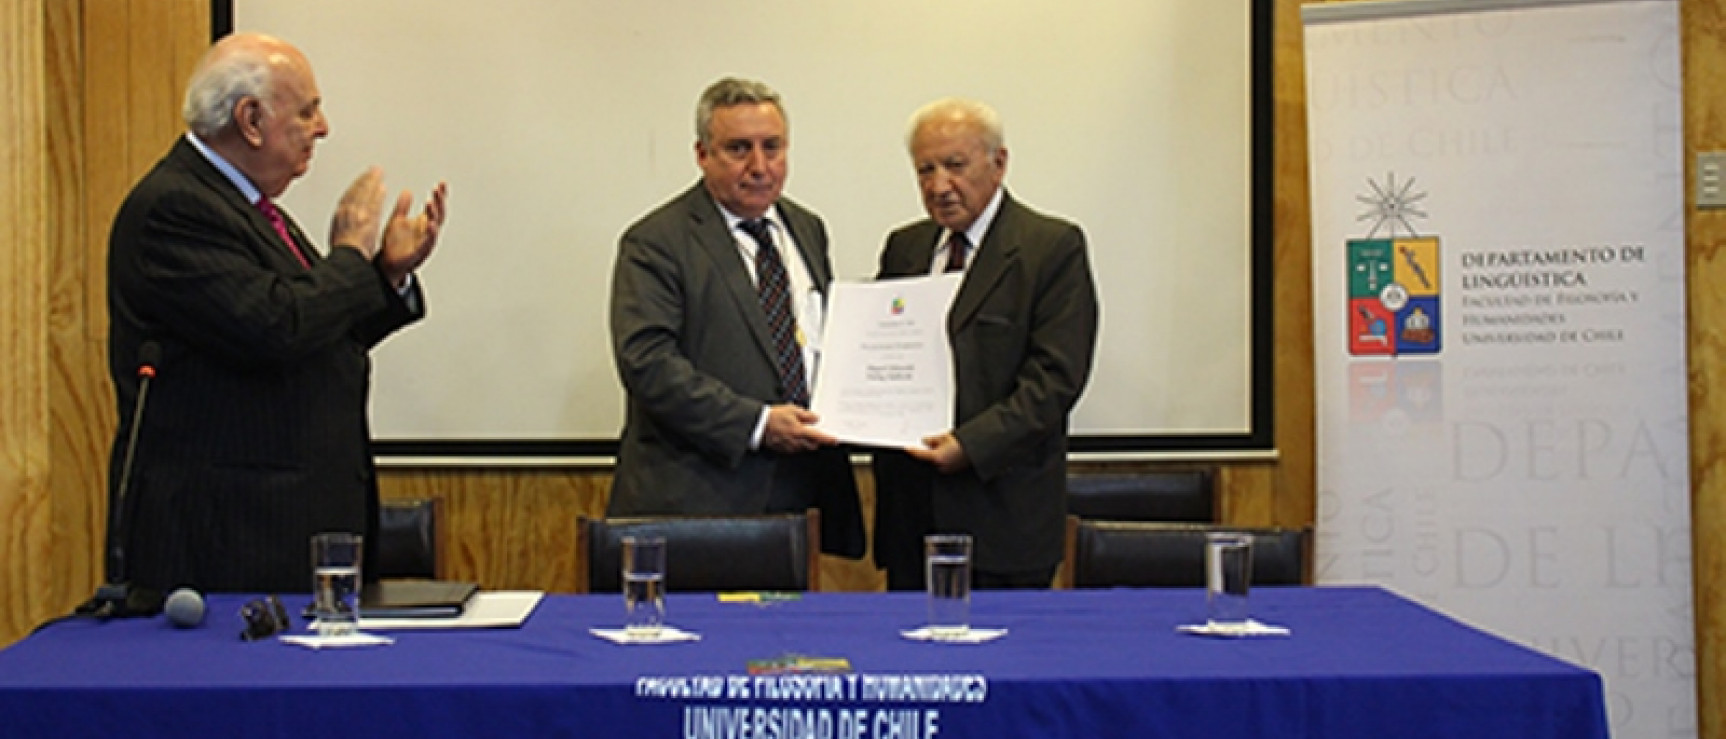 La Universidad de Chile rinde homenaje a Alfredo Matus y a Eduardo Godoy. Foto: Universidad de Chile.